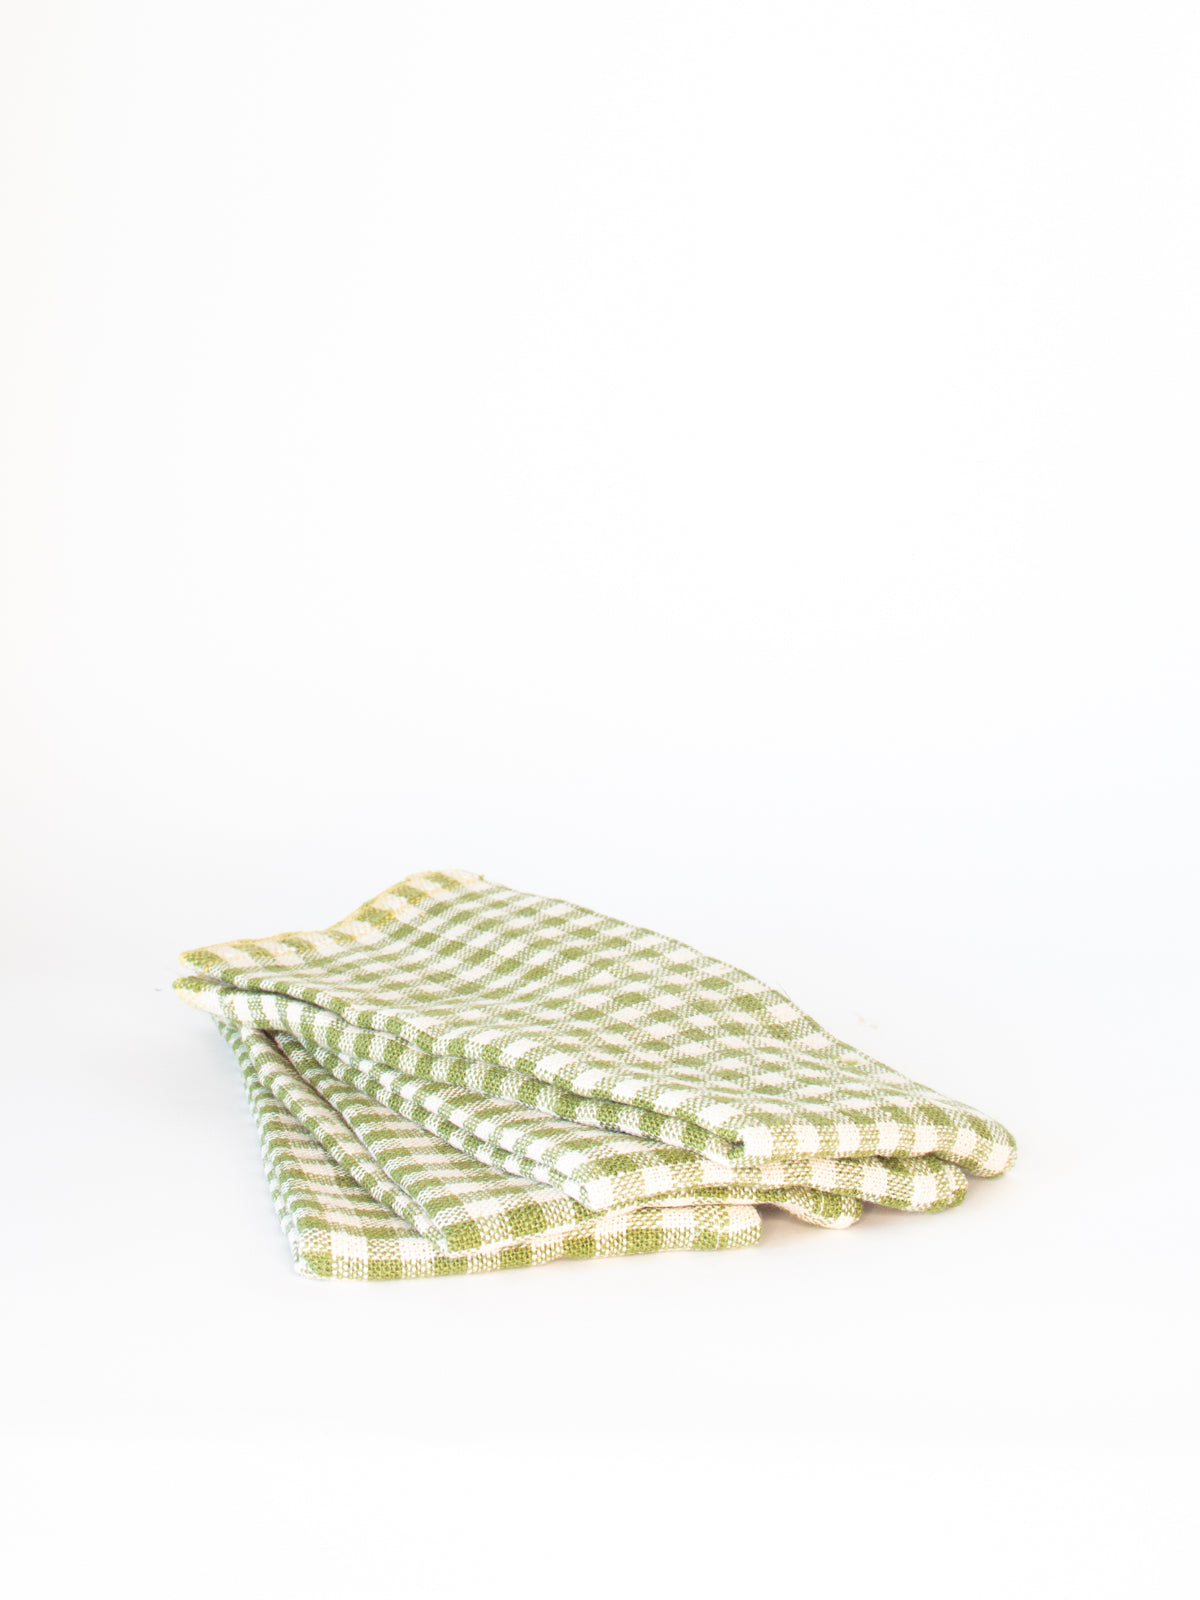 Green Gingham Linen Napkin, Set of 4